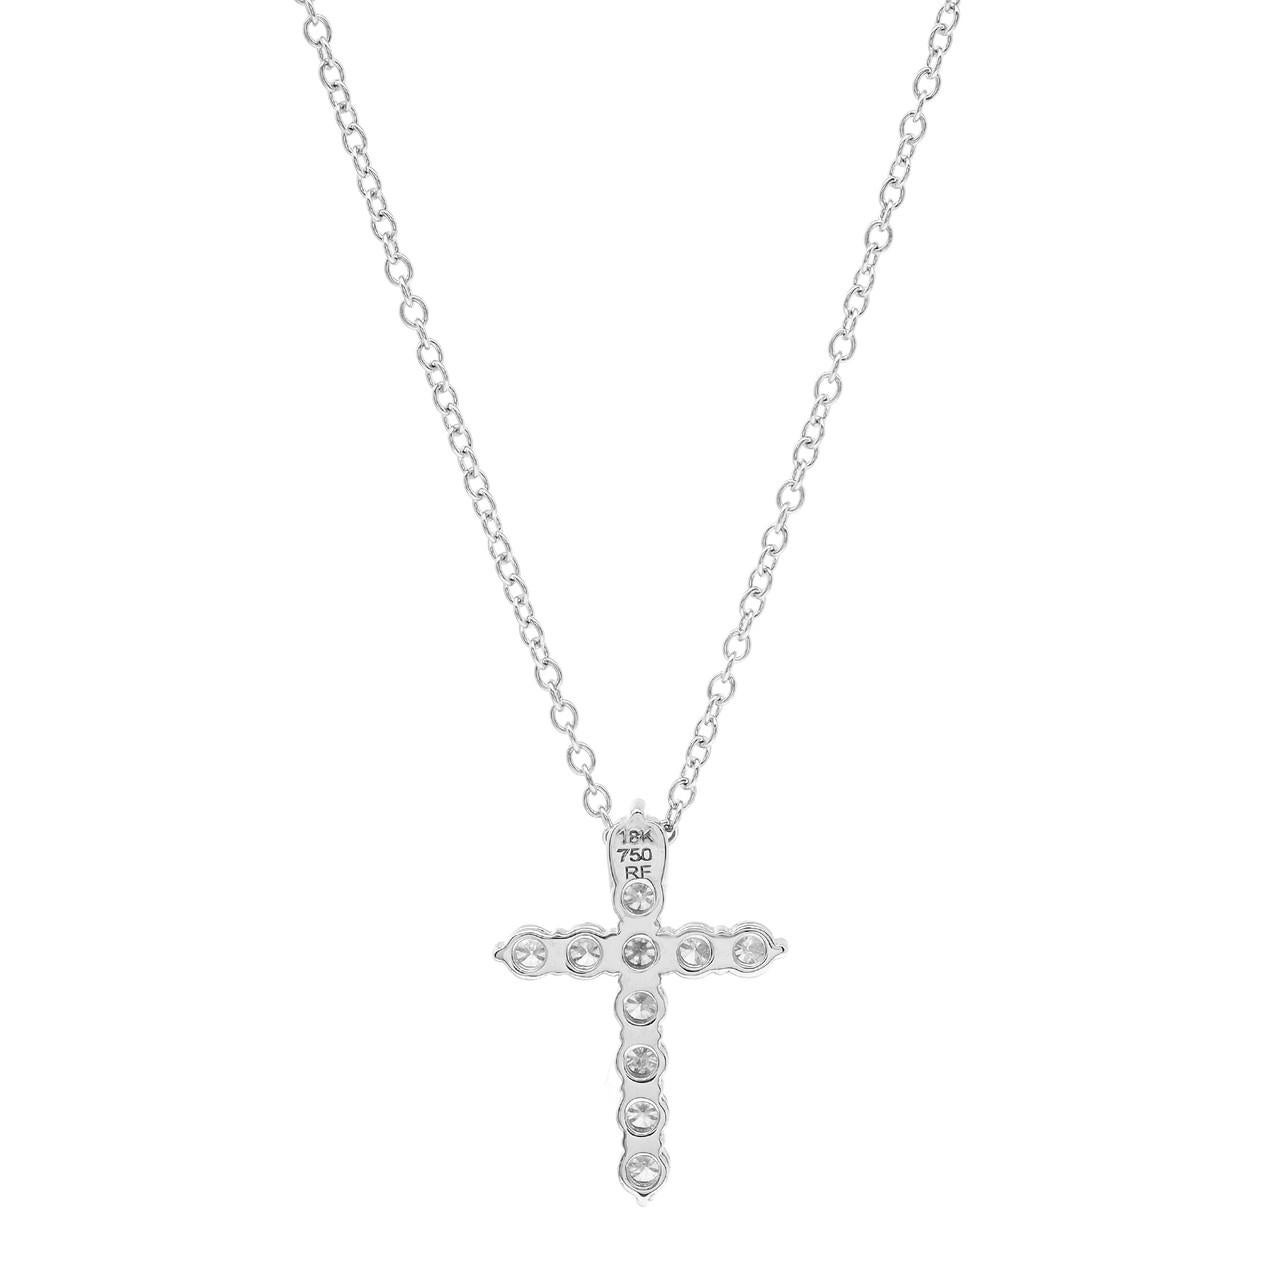 Nous vous présentons notre superbe collier pendentif croix en diamant de 0,46 carat en or blanc 18 carats ! Ce collier met magnifiquement en valeur votre foi avec un éclat brillant. Le pendentif en forme de croix est méticuleusement réalisé avec des